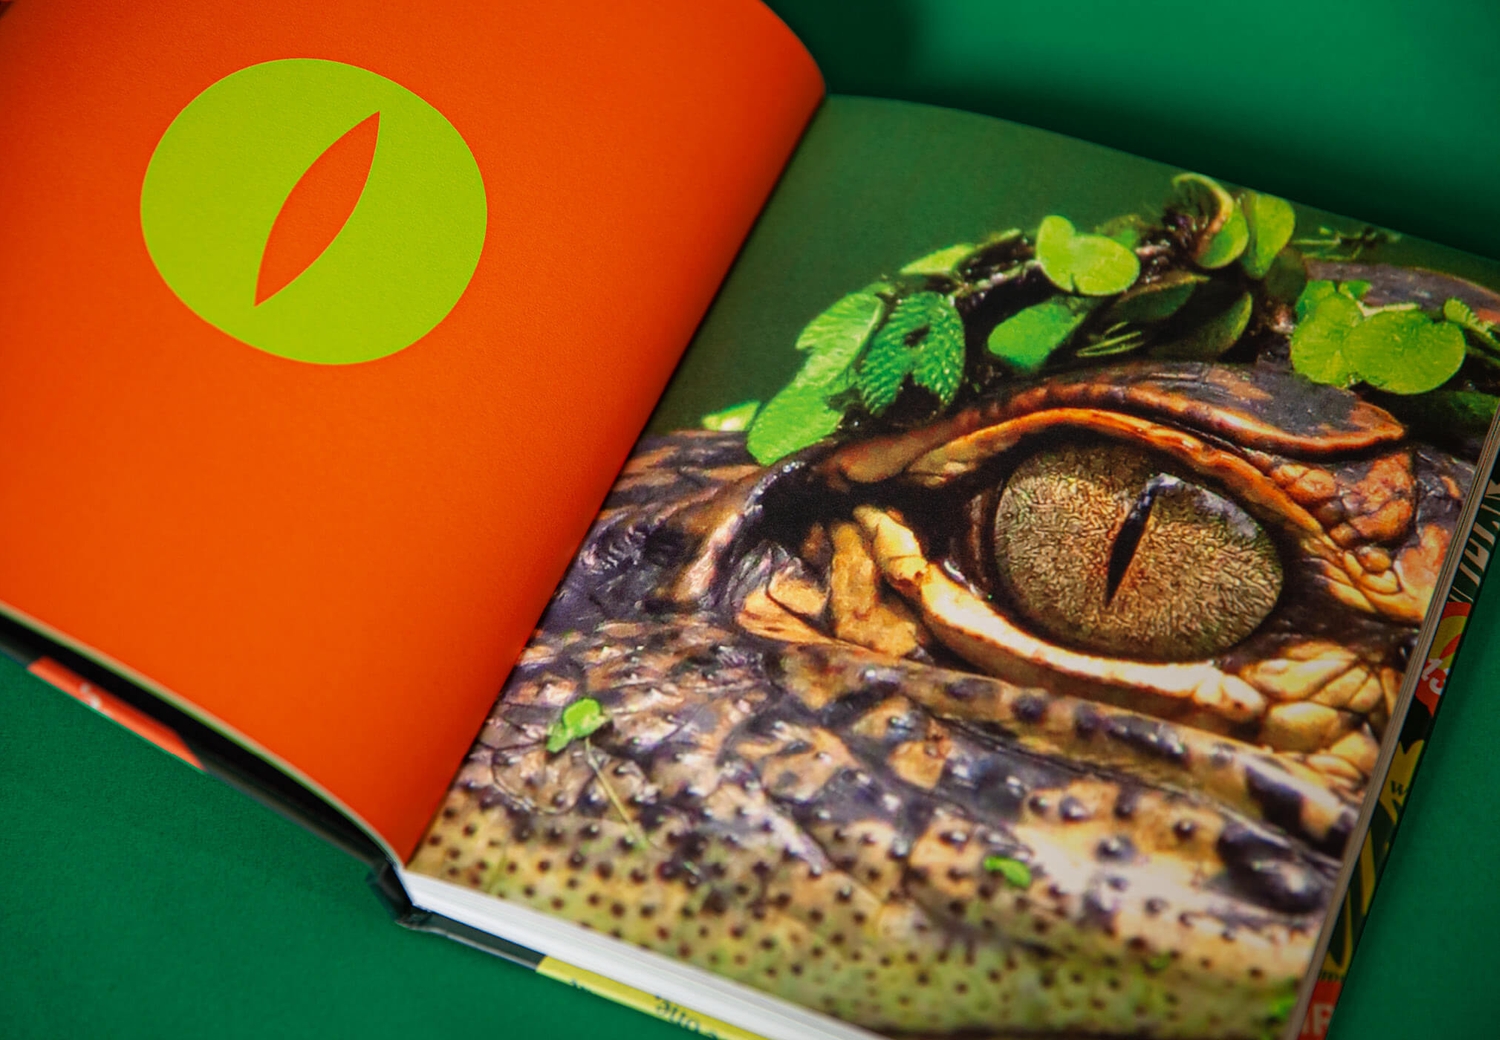 Reptile Encounters - Brandbook Internal Spread Crocodile Eye | Atollon - a design company